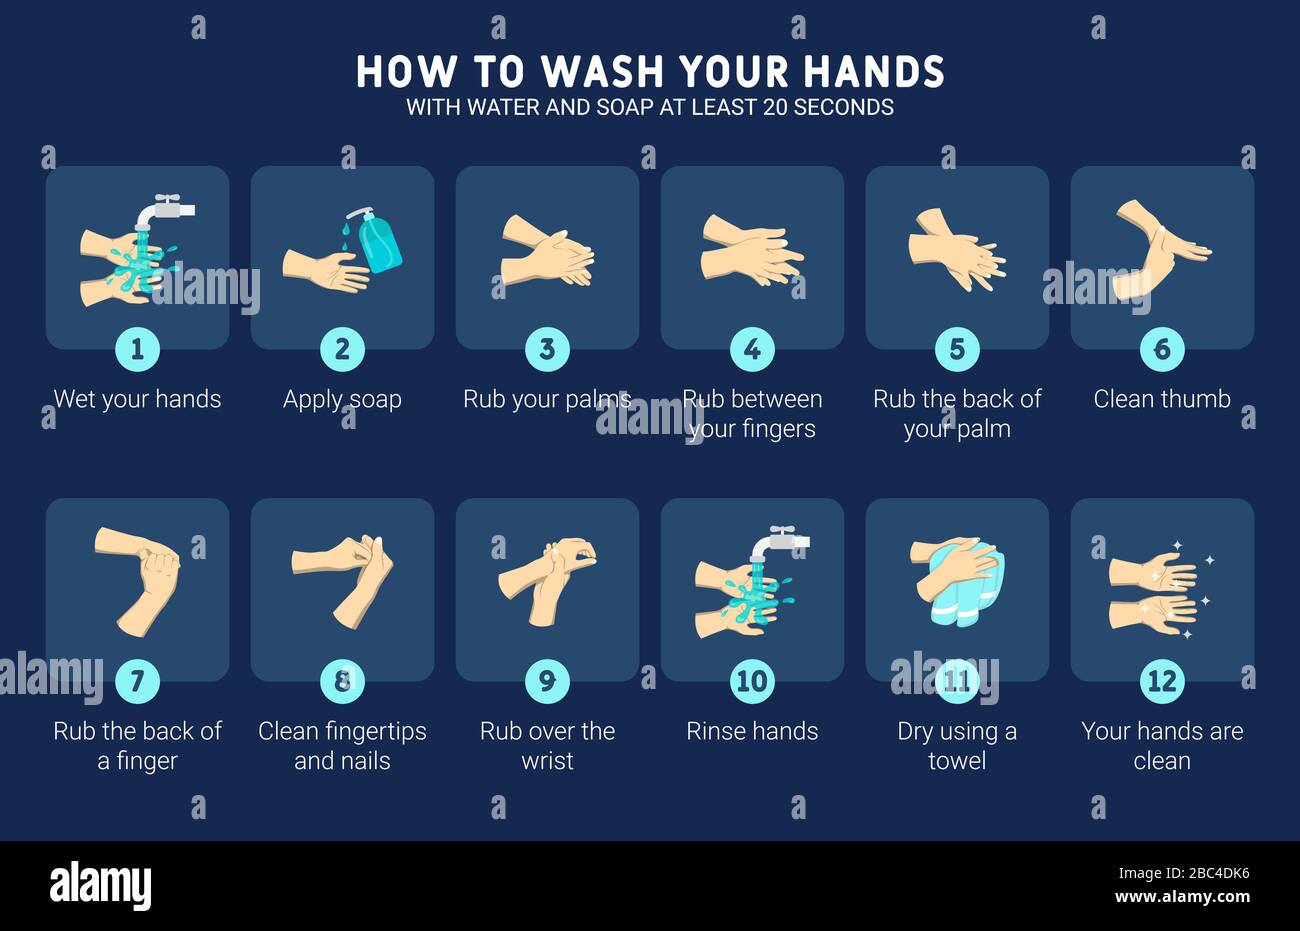 Illustrazione infografica di come lavare le mani con acqua e sapone per almeno 20 secondi. Illustrazione infografica dettagliata. Illustrazione Vettoriale